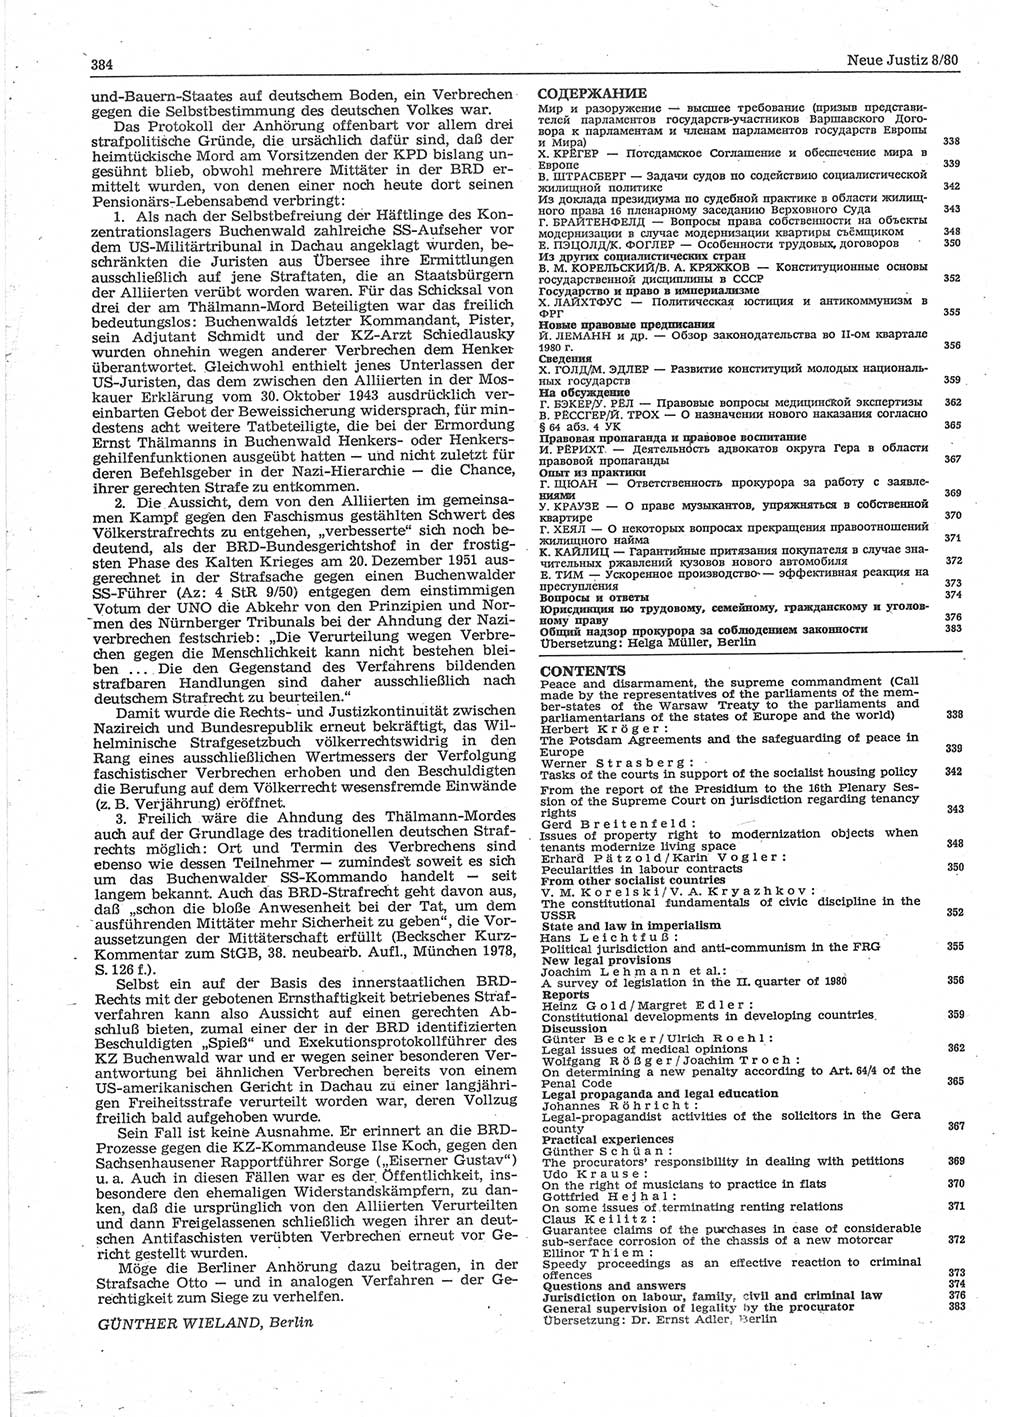 Neue Justiz (NJ), Zeitschrift für sozialistisches Recht und Gesetzlichkeit [Deutsche Demokratische Republik (DDR)], 34. Jahrgang 1980, Seite 384 (NJ DDR 1980, S. 384)